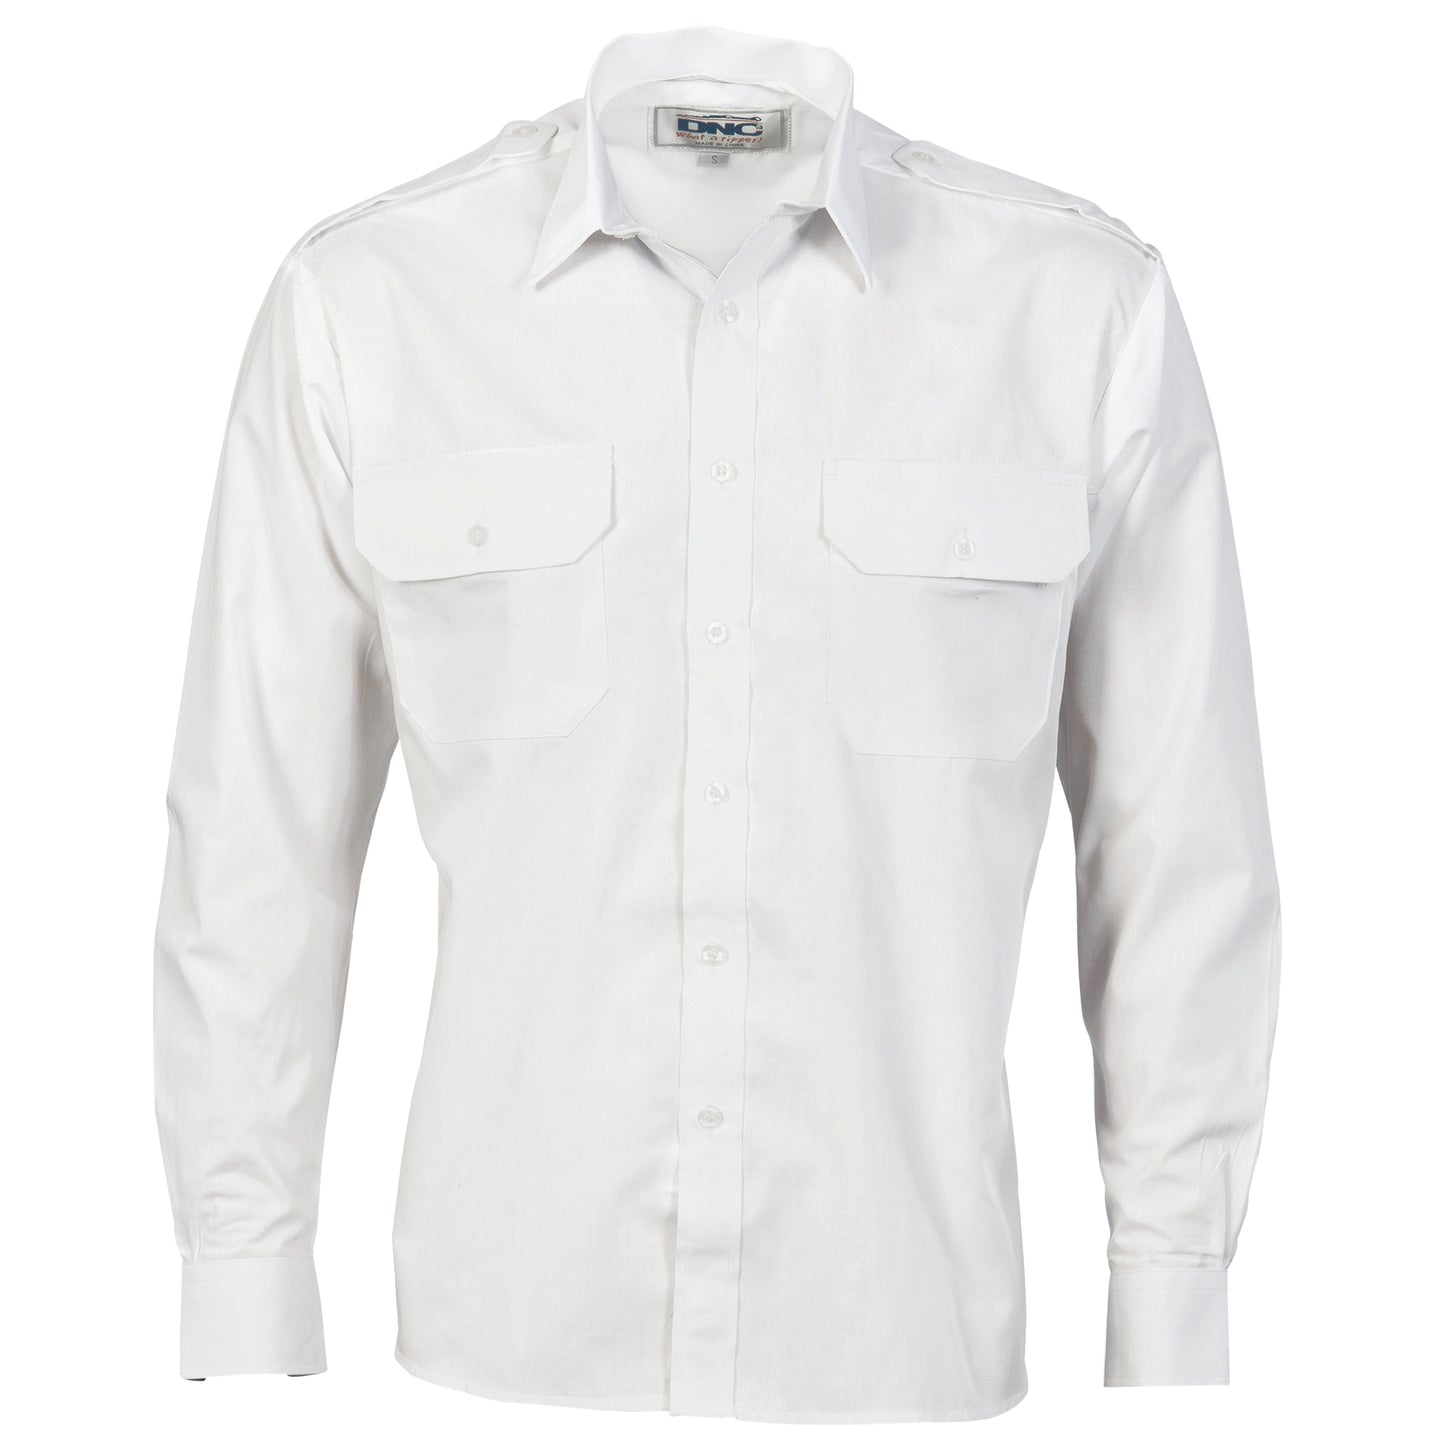 DNC Epaulette Polyester/Cotton Work Shirt - Long Sleeve 3214 - Star Uniforms Australia